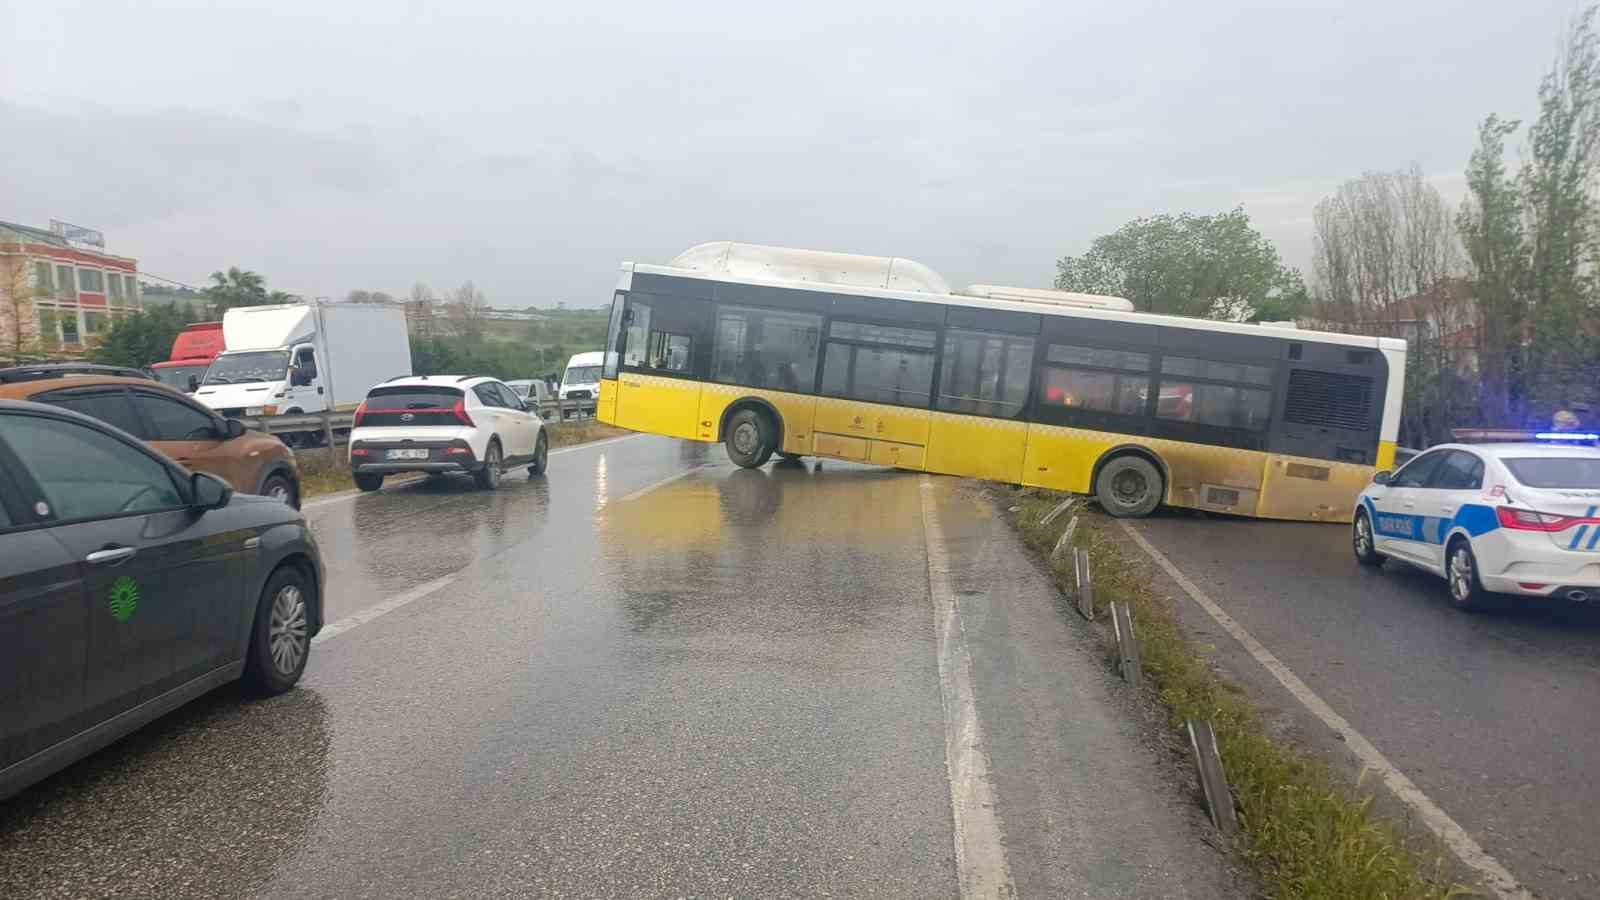 Büyükçekmece’de yağmurda kayan İETT otobüsü bariyerlere çarptı
